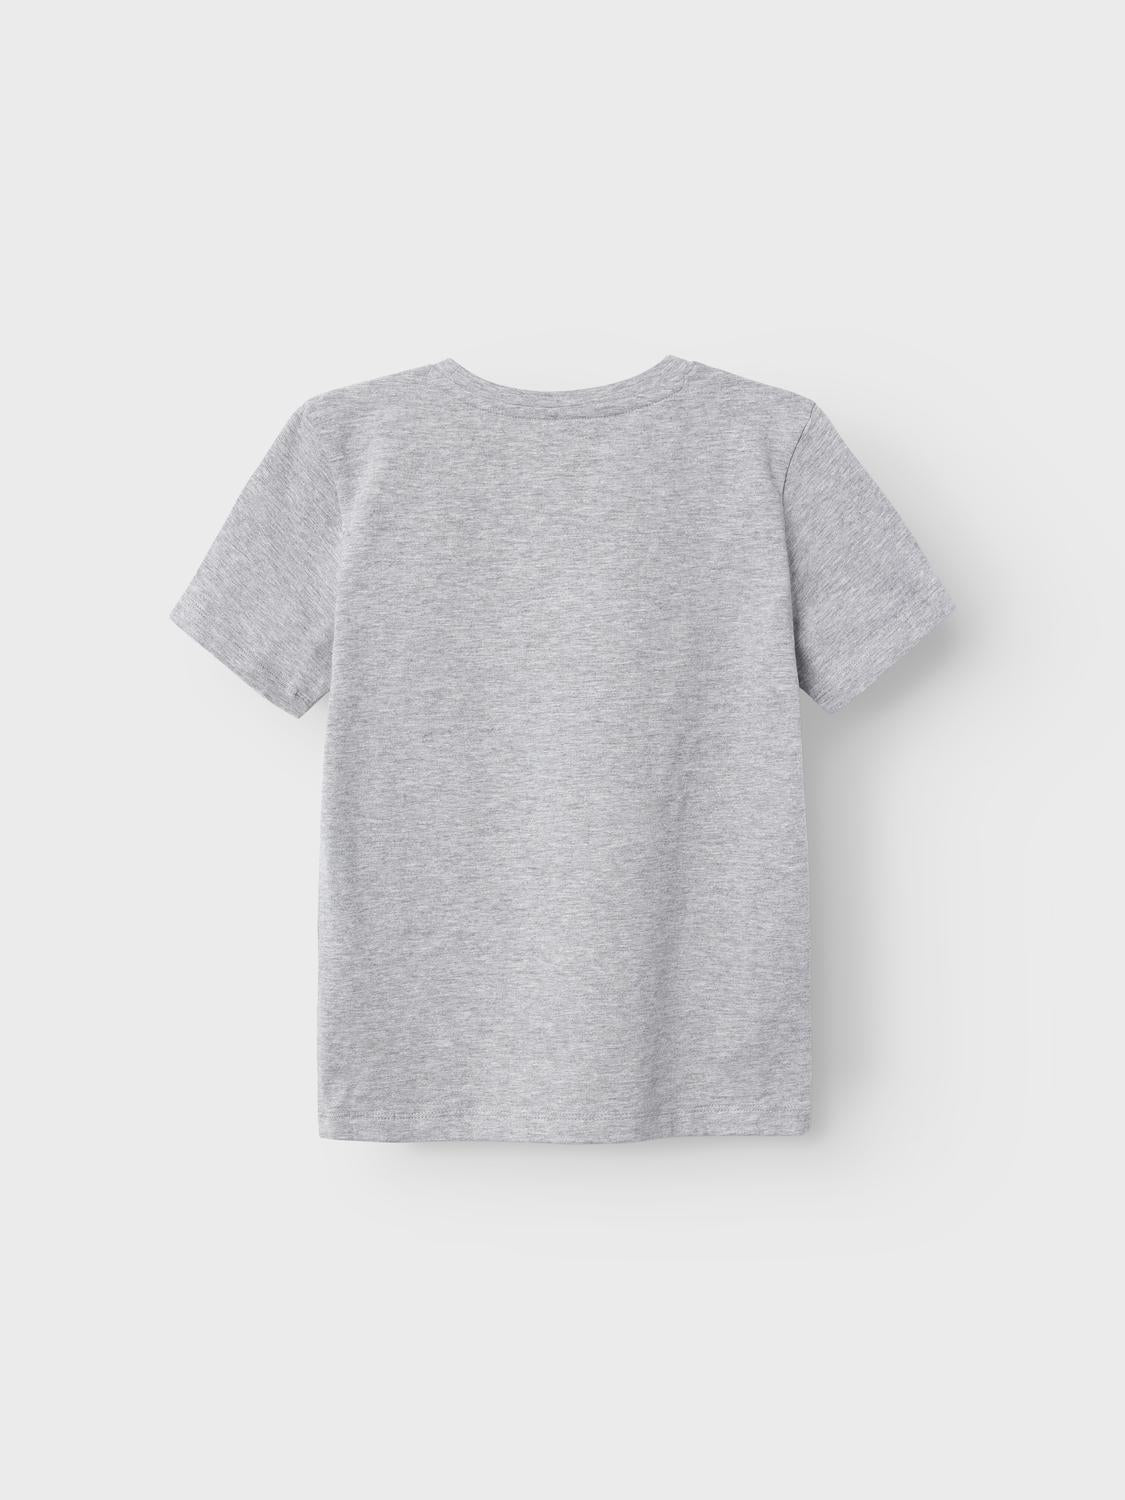 NKMOTHY T-Shirts & Tops - Grey Melange